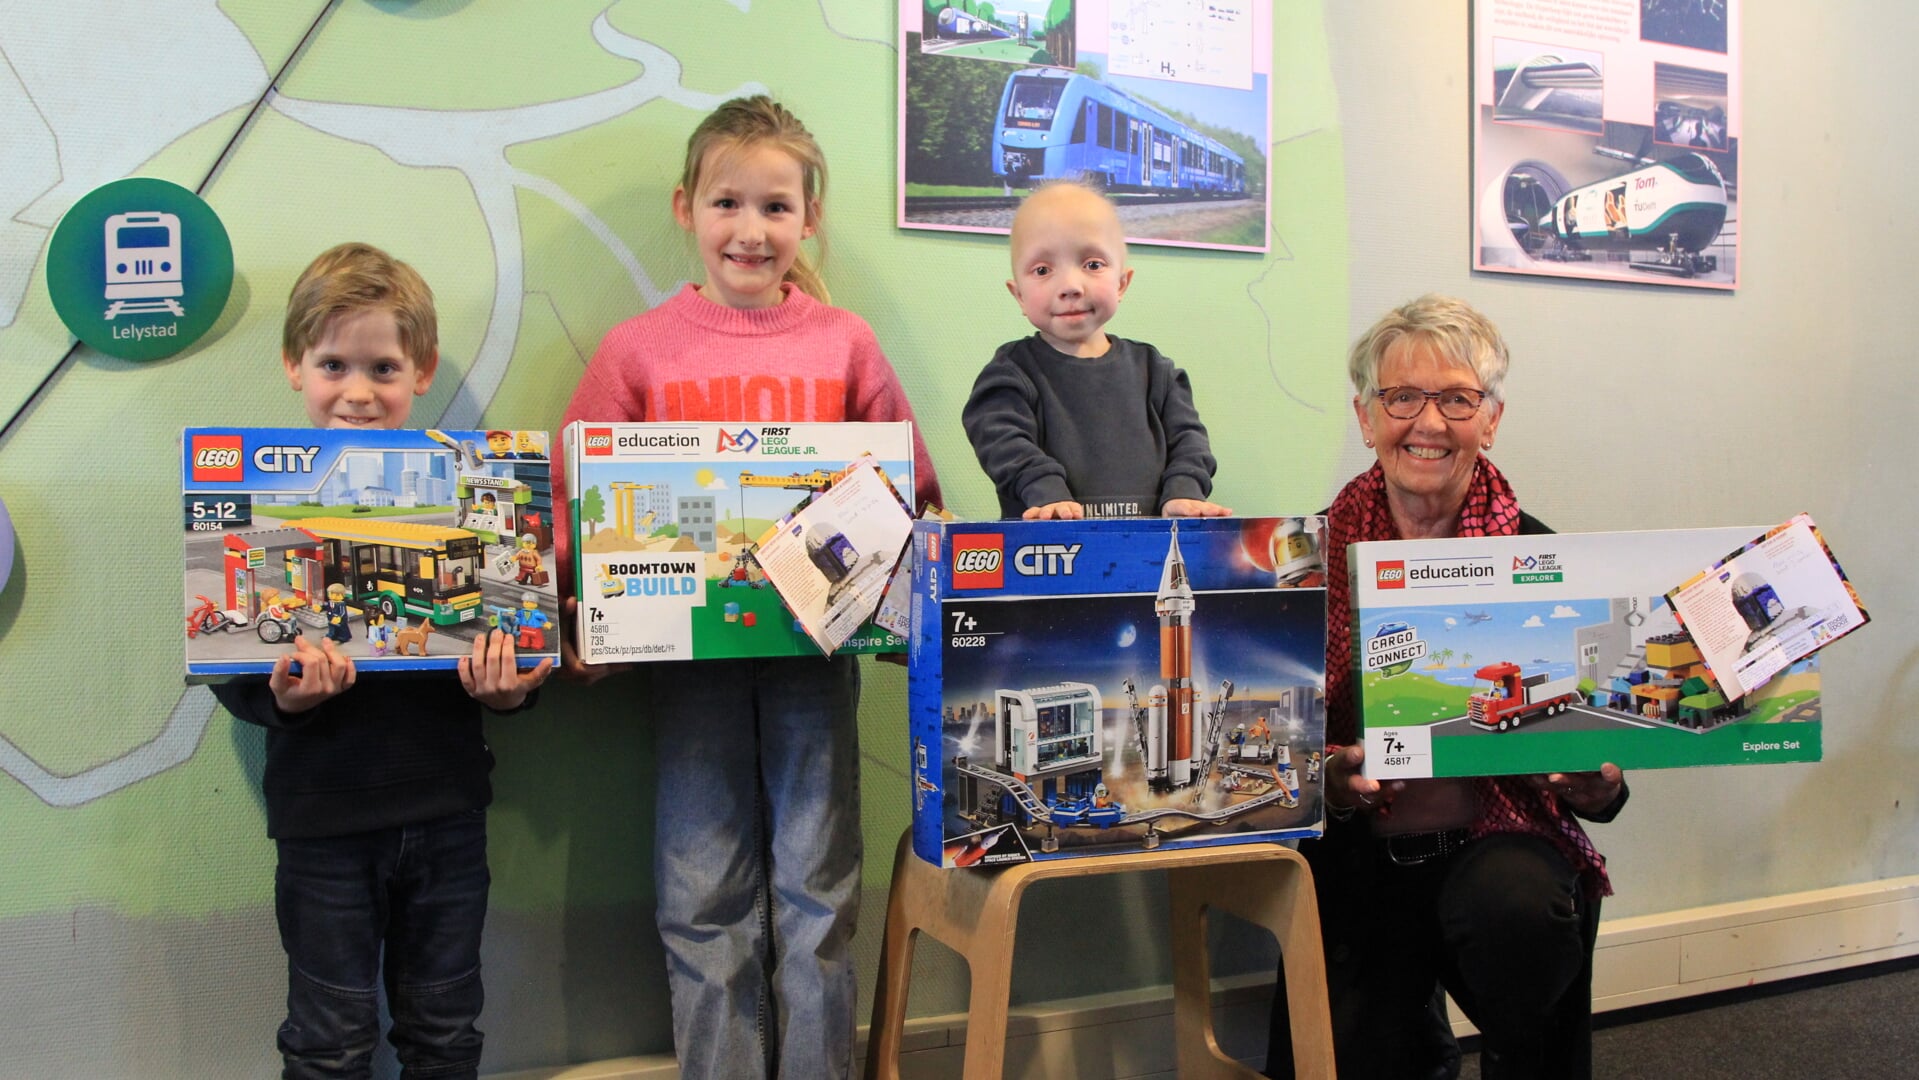 Deel van de winnaars van de Lego speurtocht. Op de foto: vlnr. Nathan uit Sneek, Vivianne uit Sneek, Matthijn (namens zijn zus Esther) uit Rouveen, beppe (namens Jelle) uit Twente.